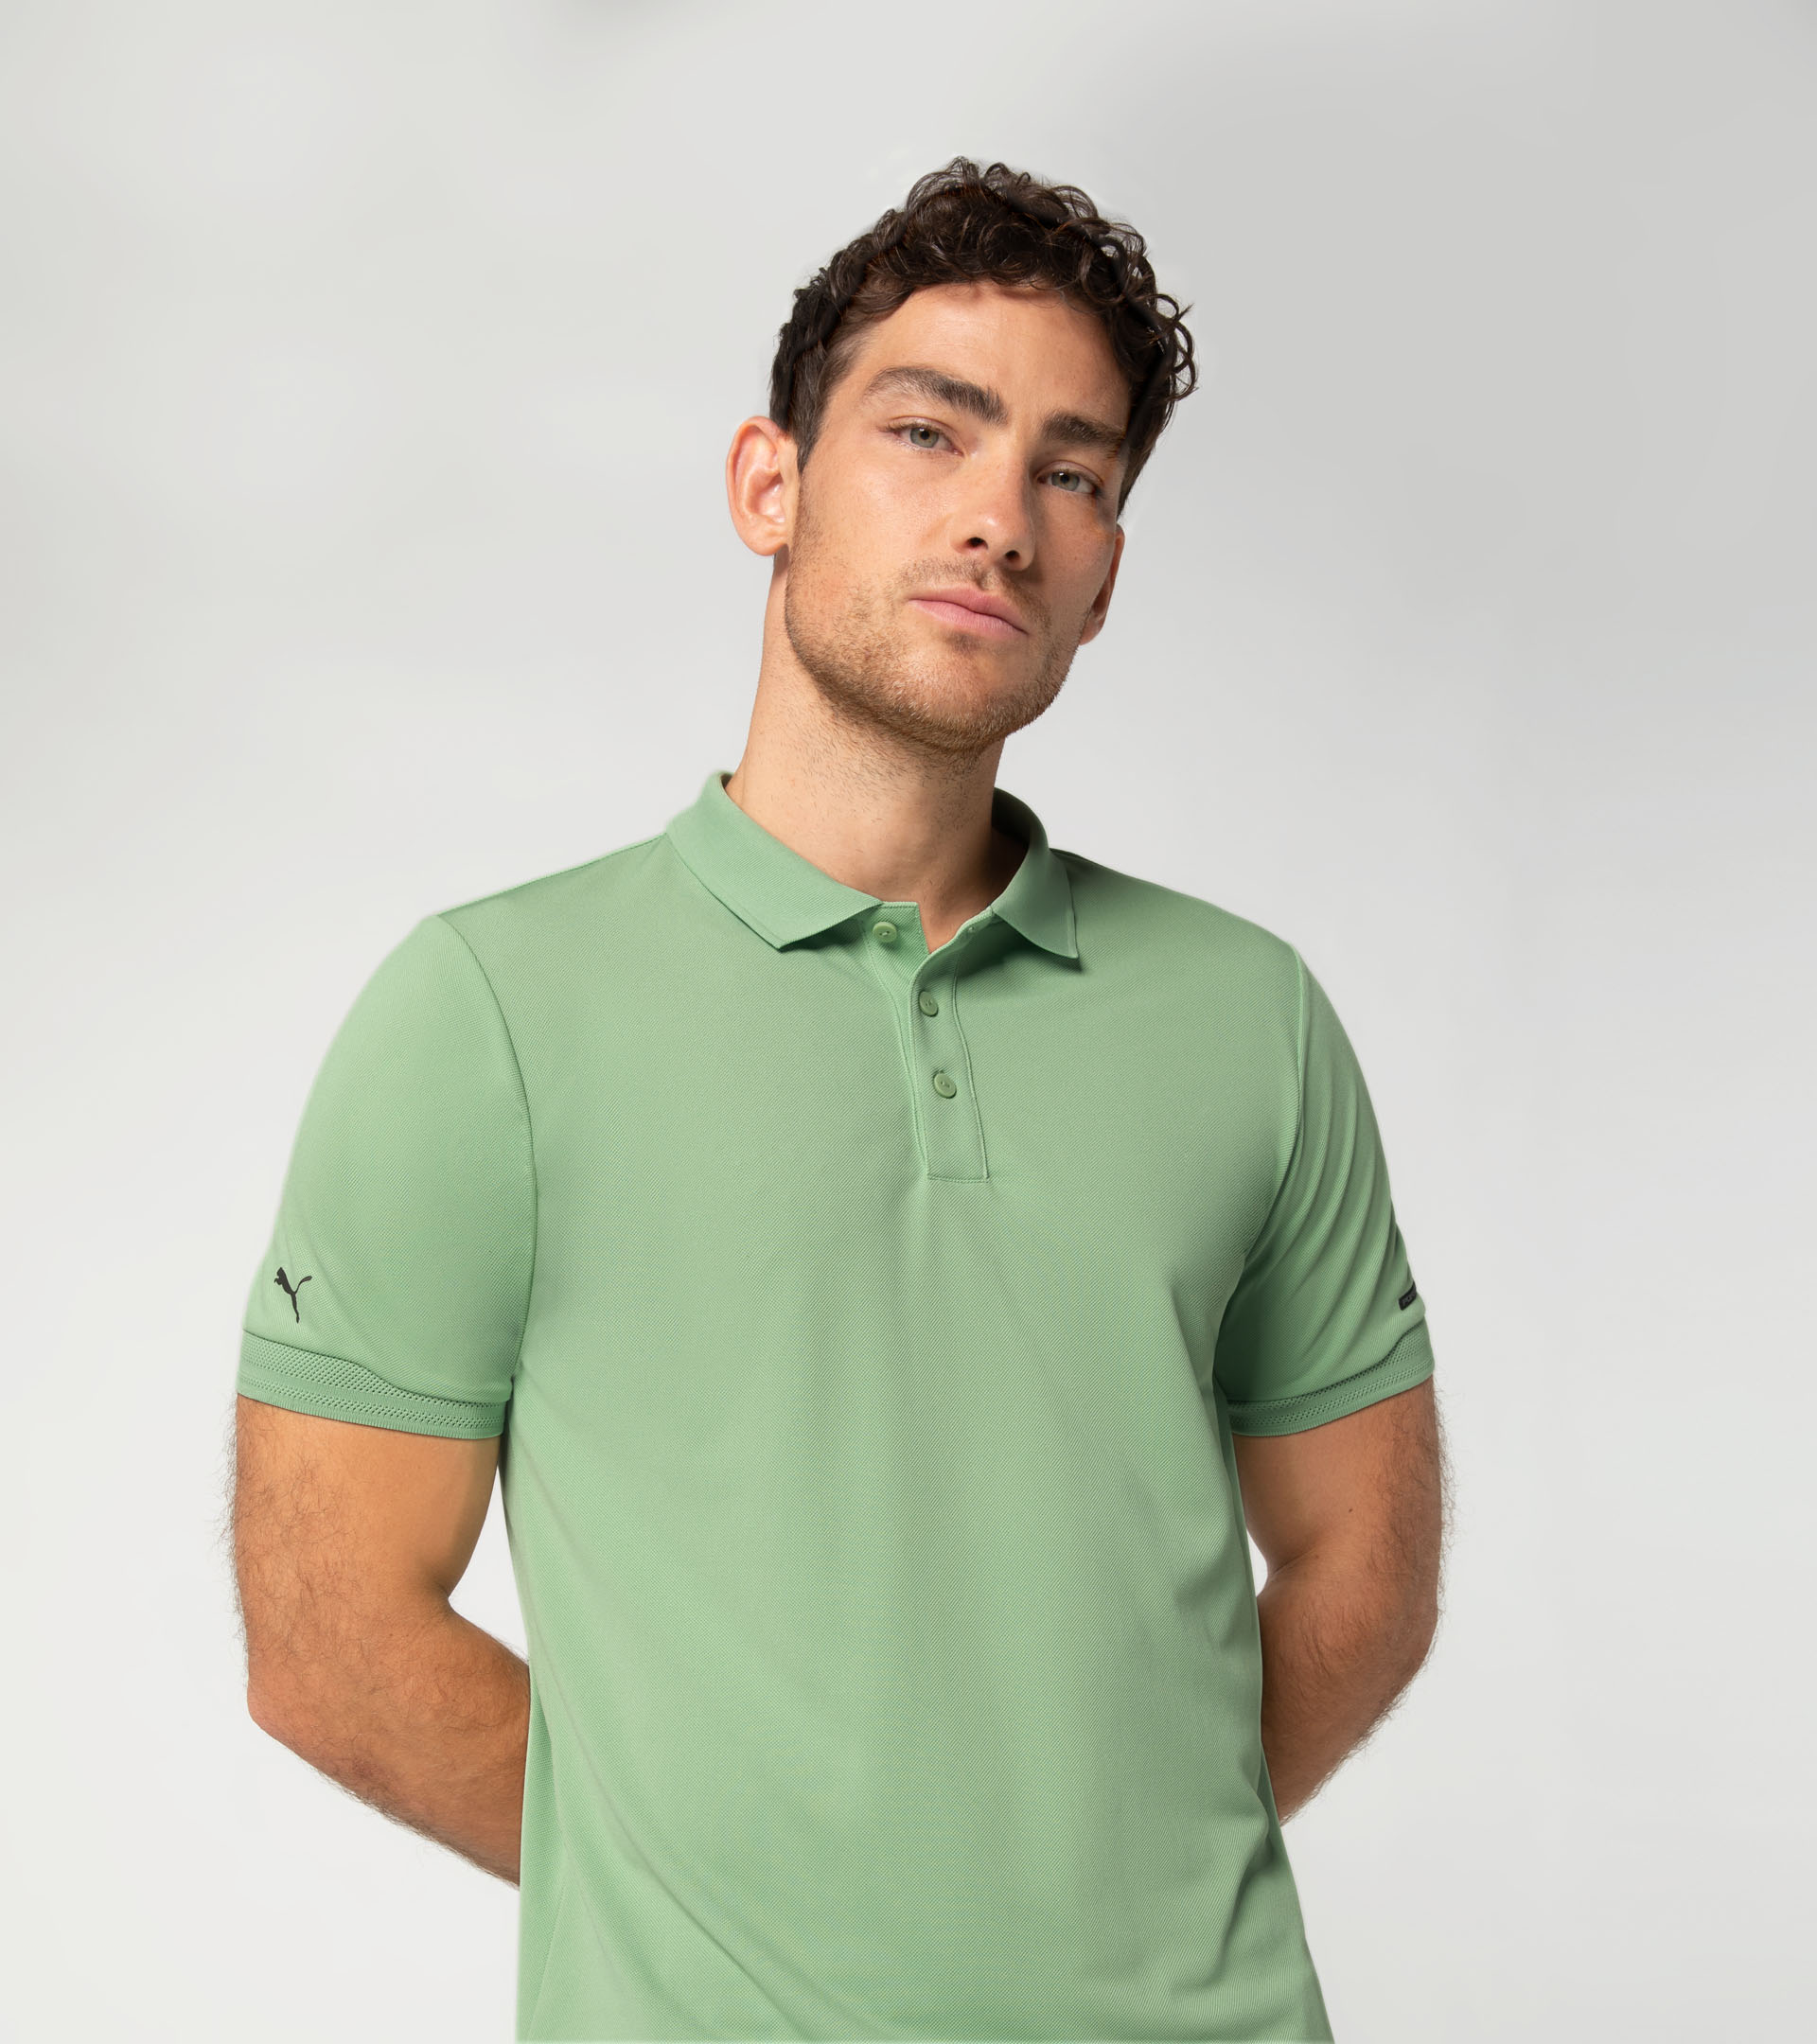 Polo shirt - Exclusive Sports Polo & T-Shirts for Men | Porsche Design ...